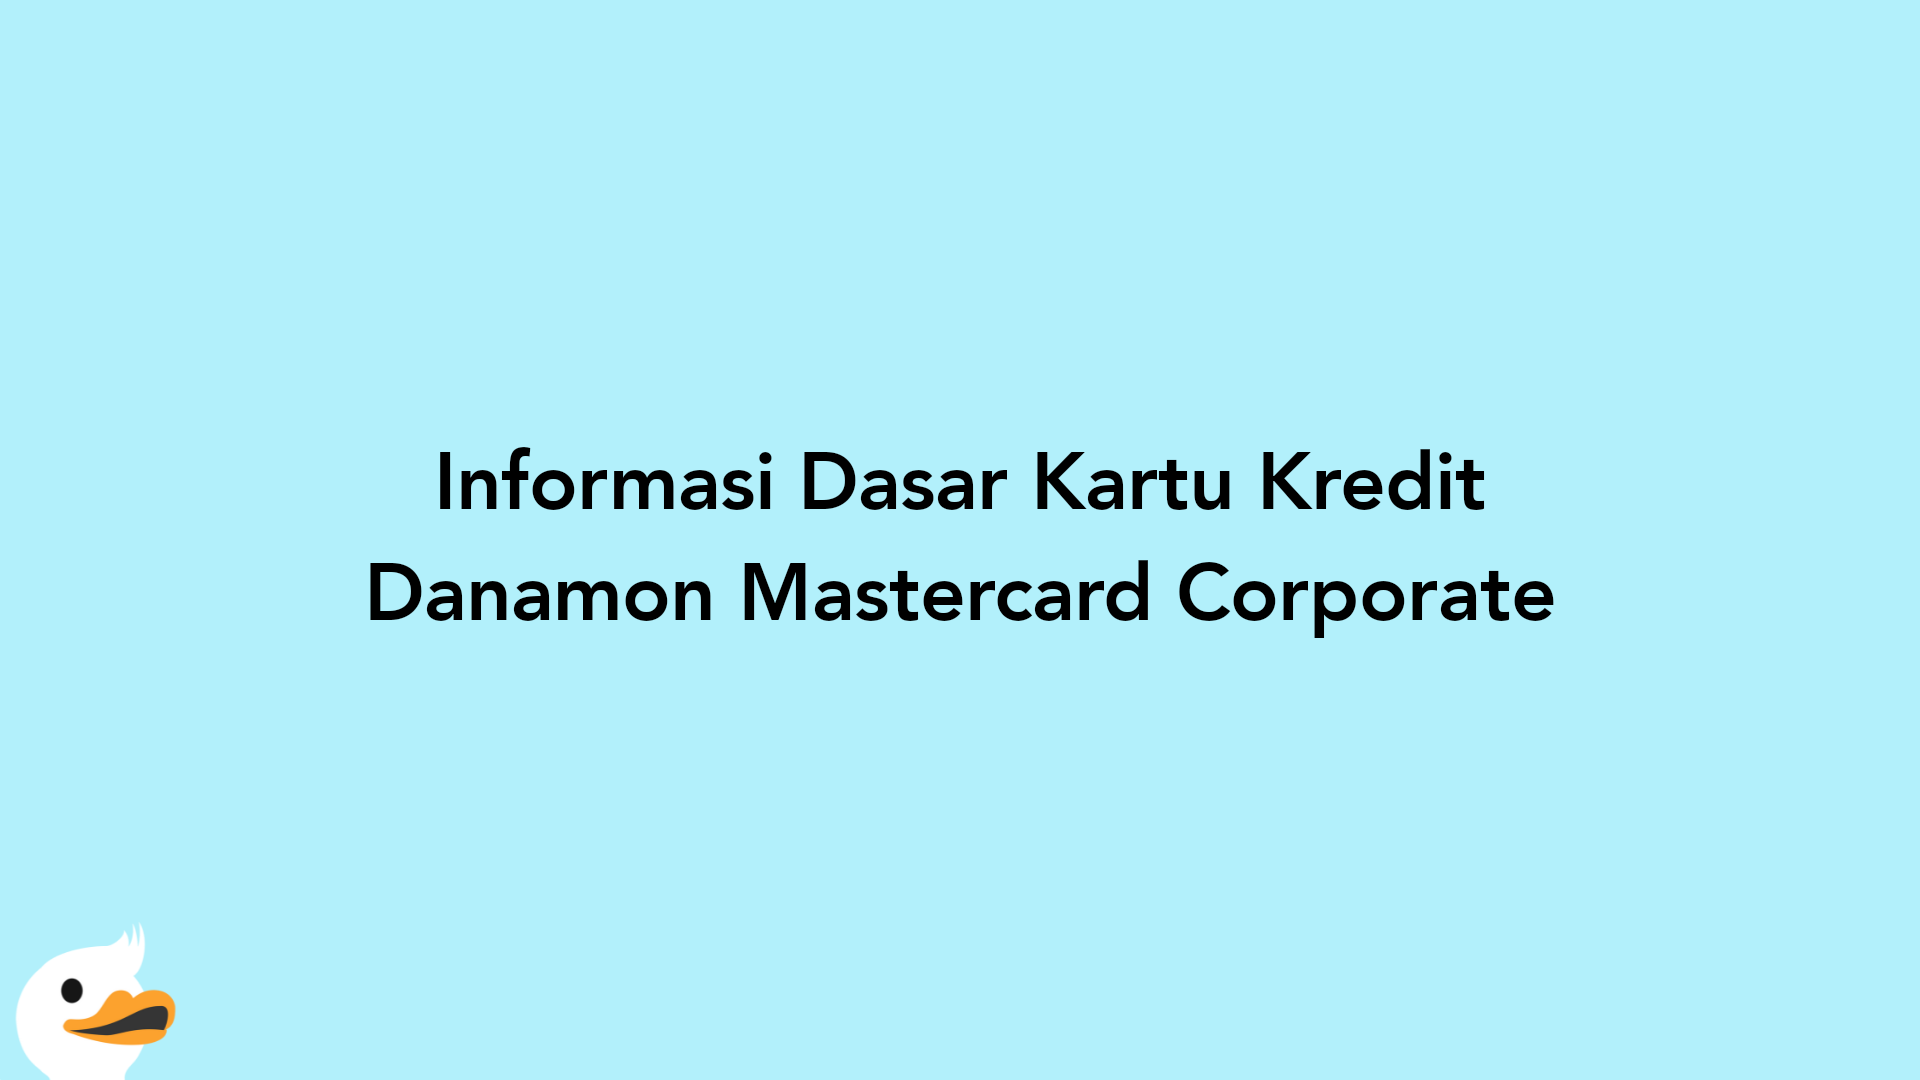 Informasi Dasar Kartu Kredit Danamon Mastercard Corporate